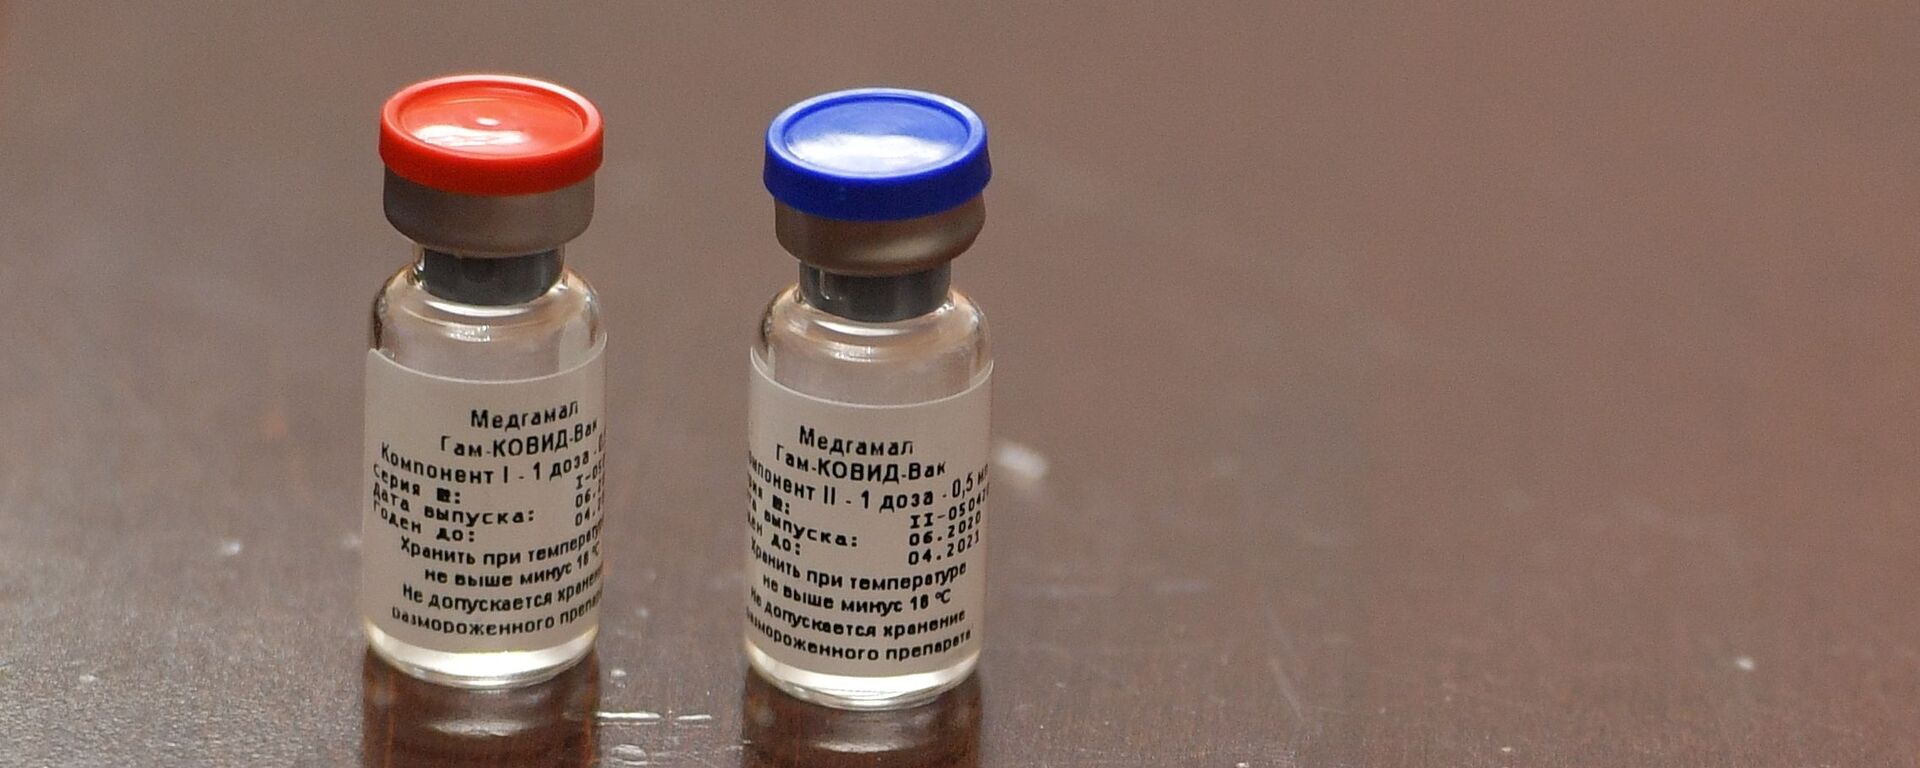 Брифинг, посвященный первой в мире зарегистрированной вакцине от COVID-19 - Sputnik Армения, 1920, 10.08.2021